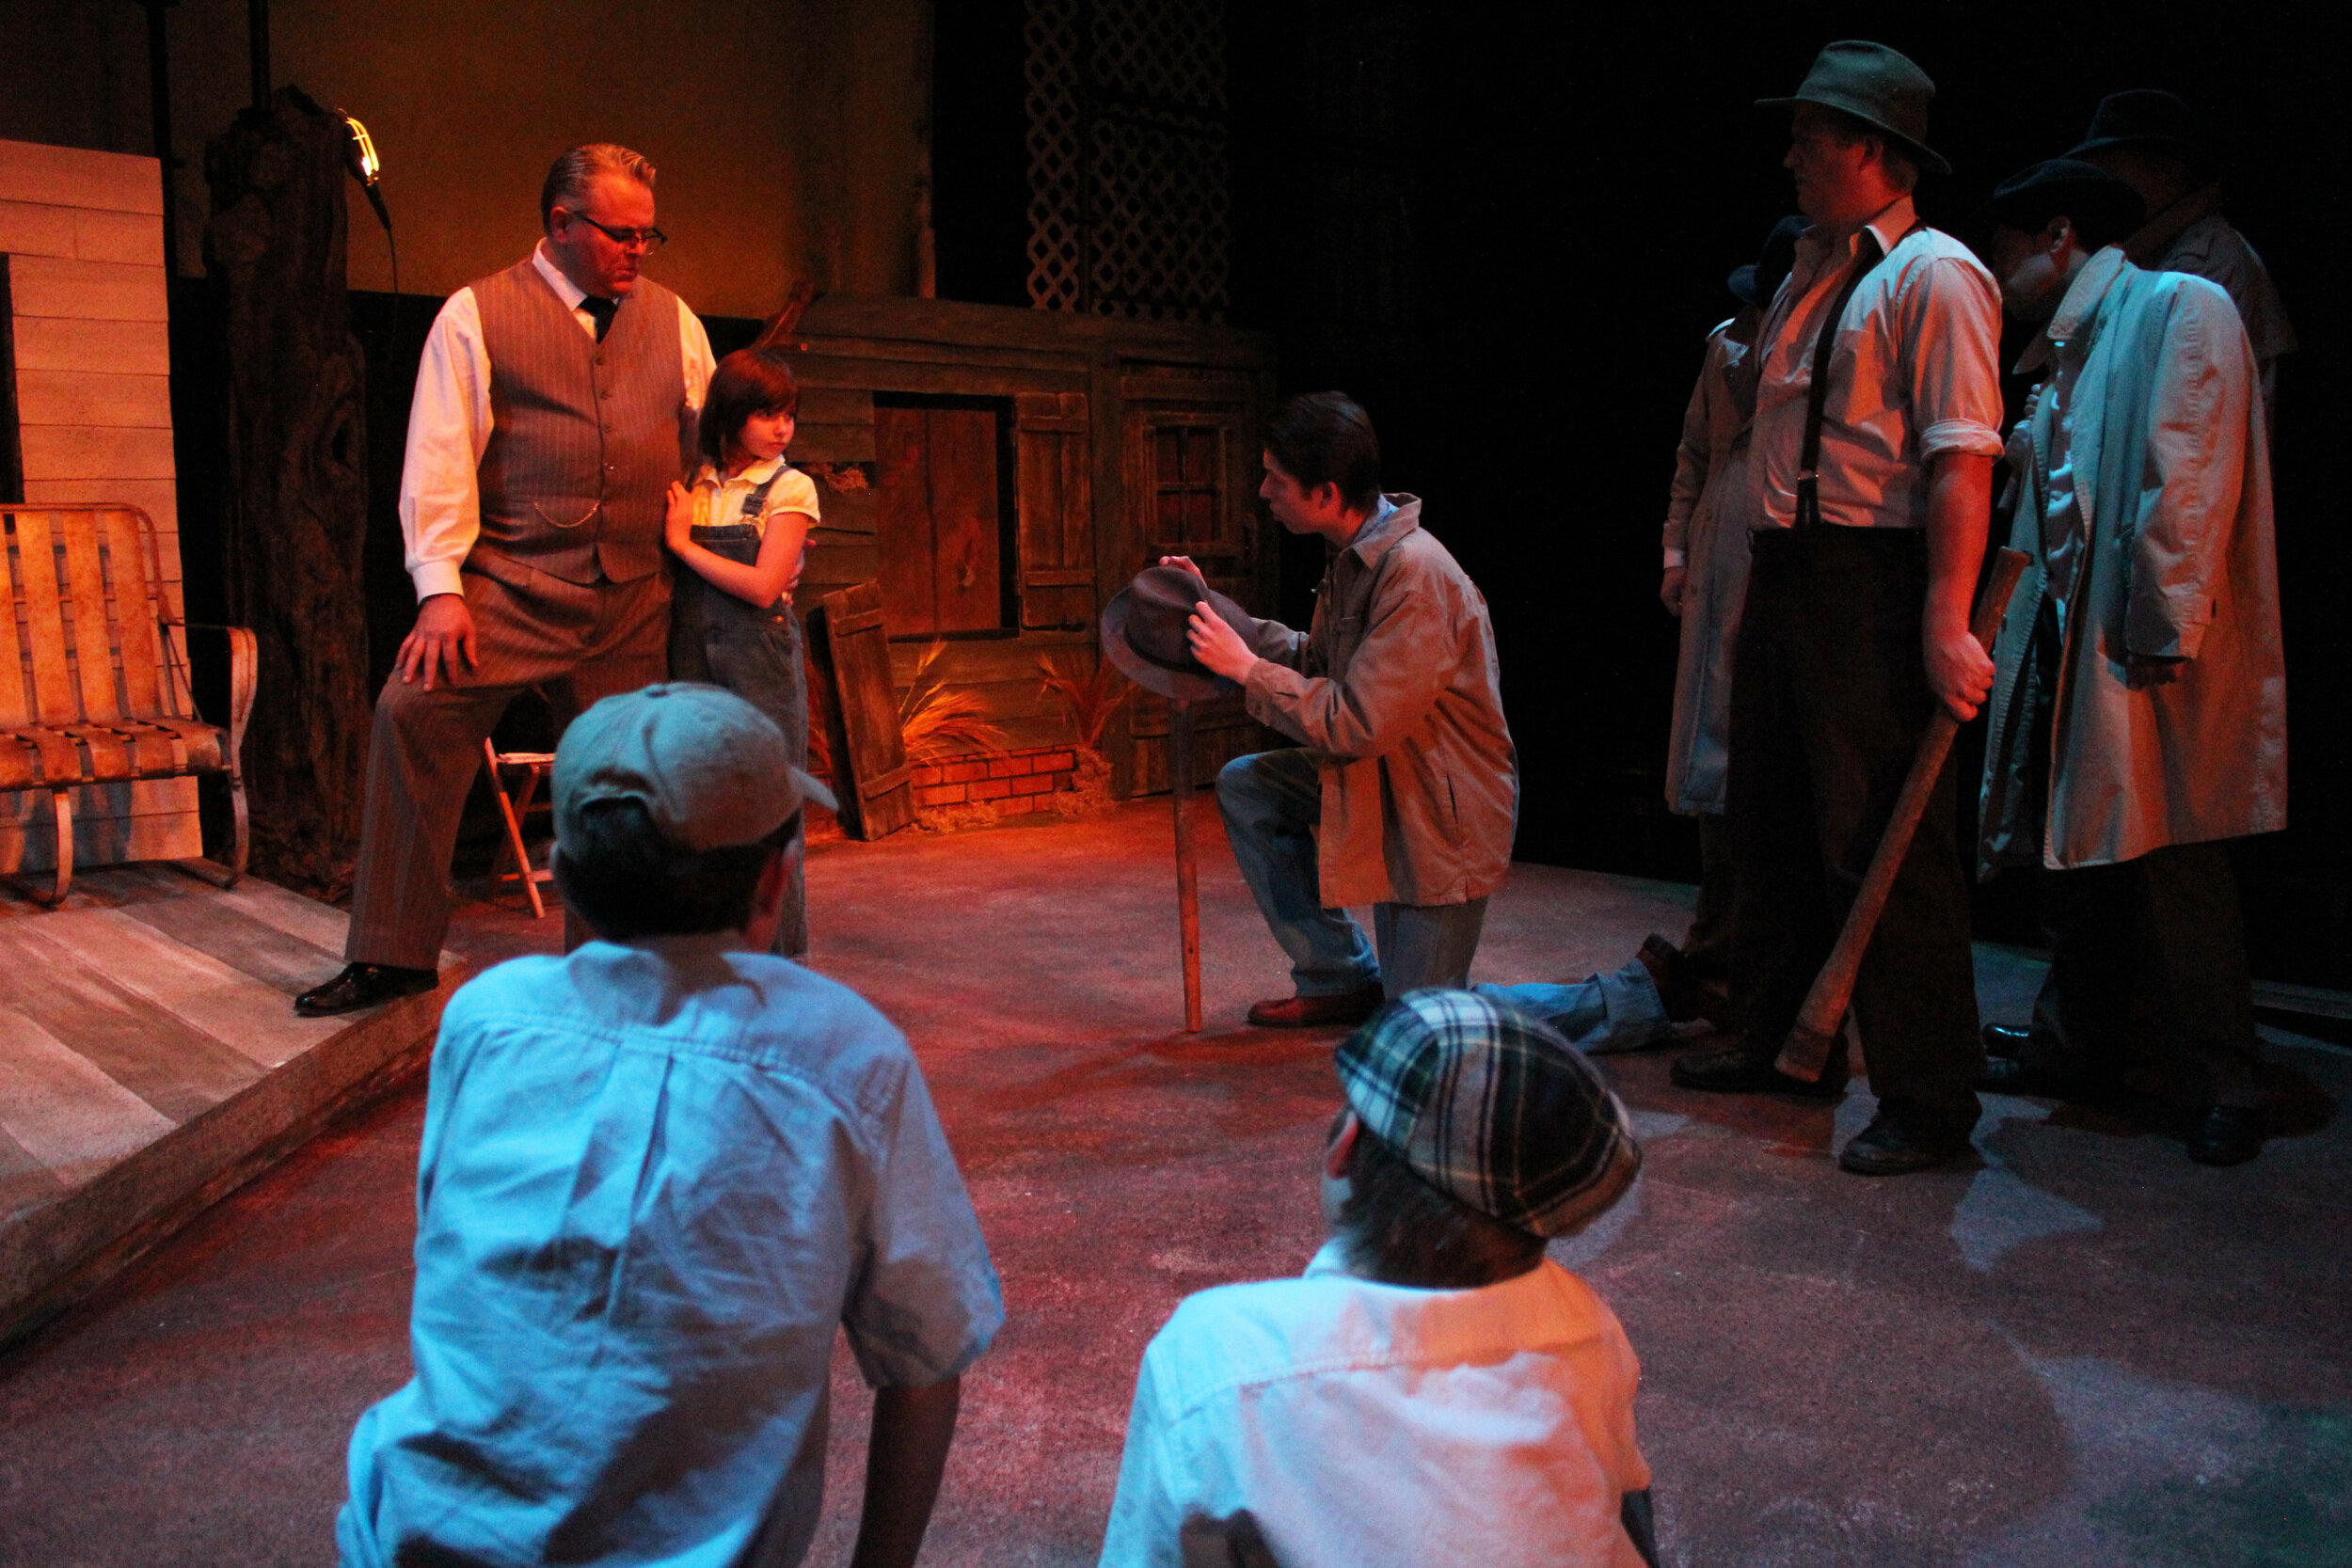 To Kill A Mockingbird 2007 – Wheelock Family Theatre